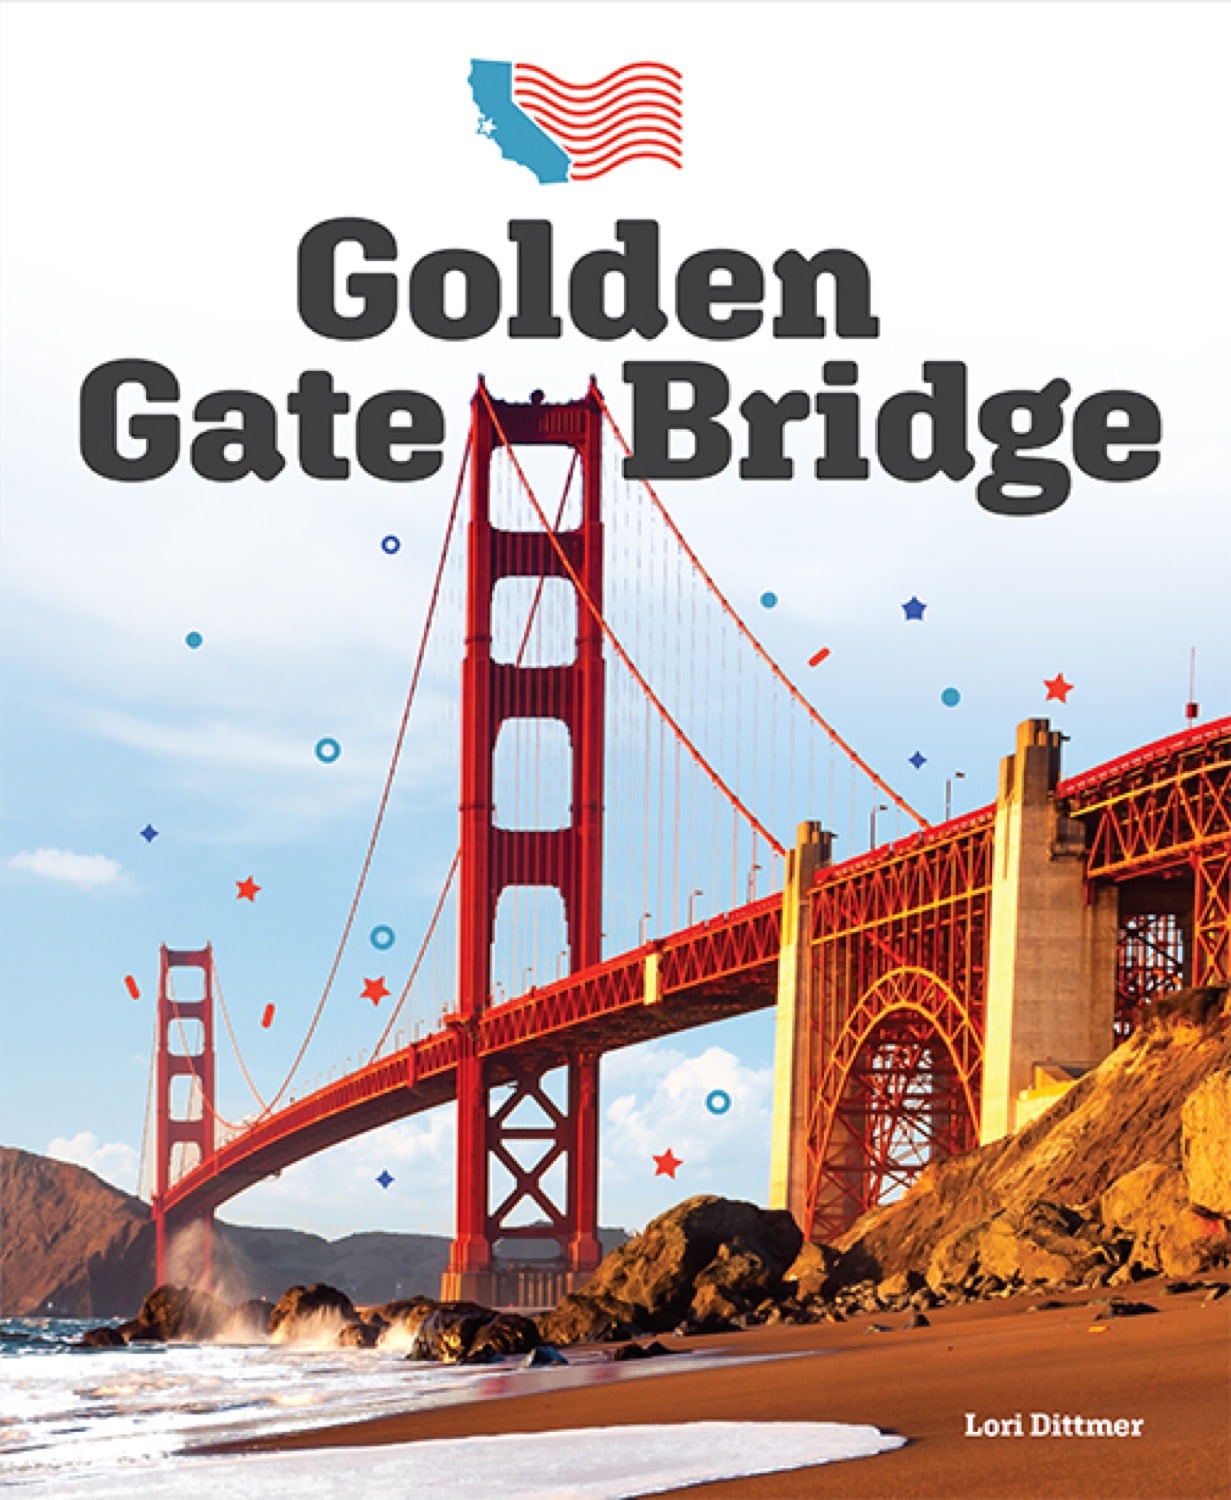 Landmarks of America: Golden Gate Bridge